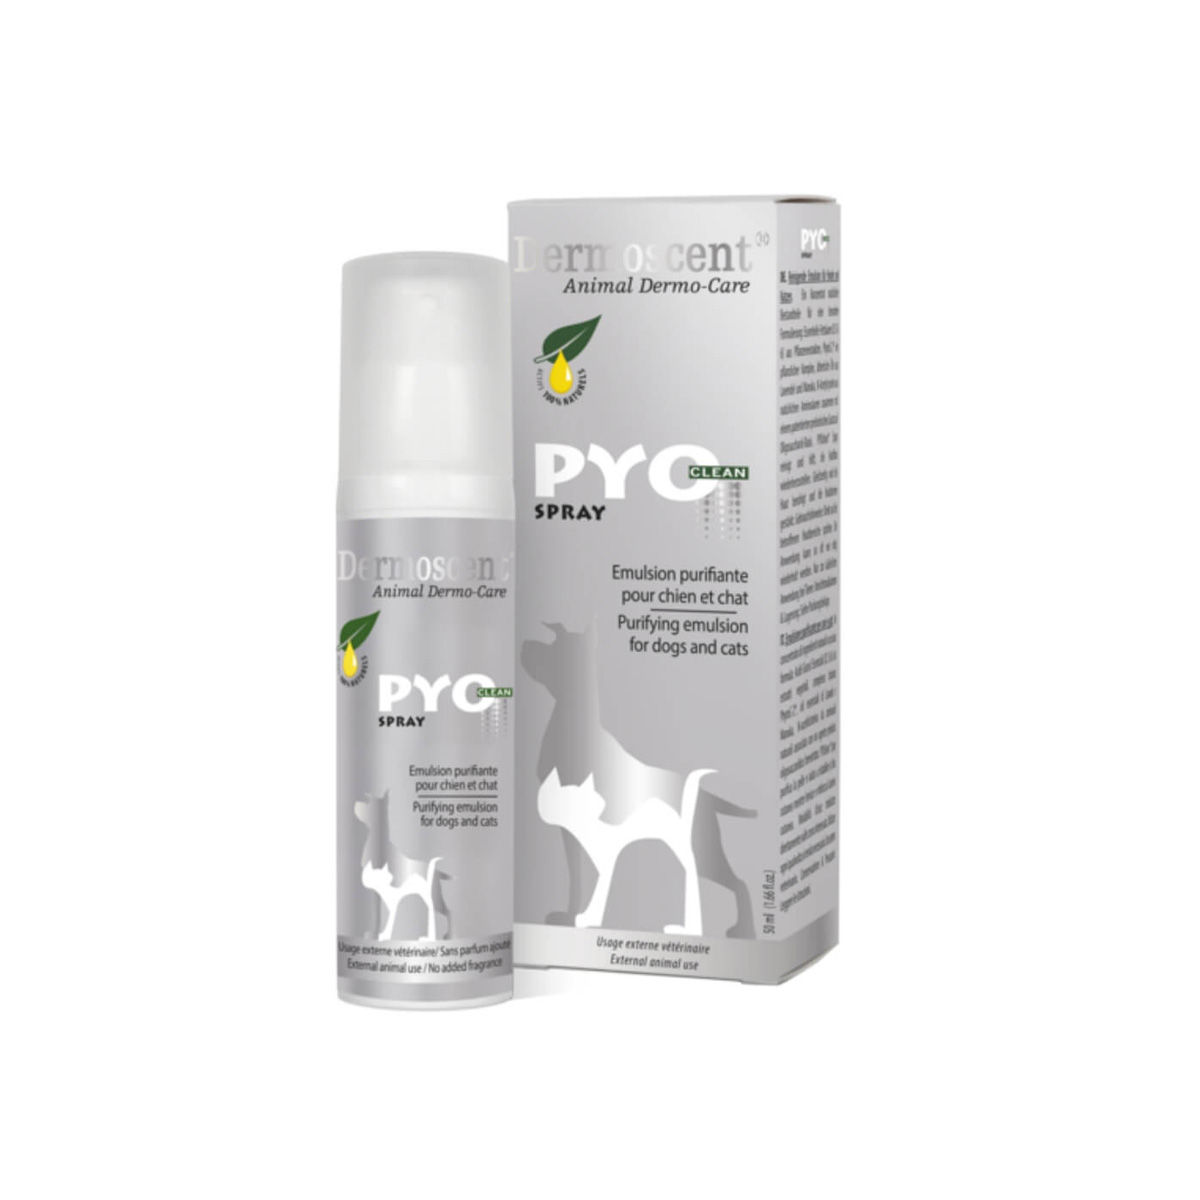 Dermoscent PyoClean Spray pentru caini si pisici 50ml Dermoscent